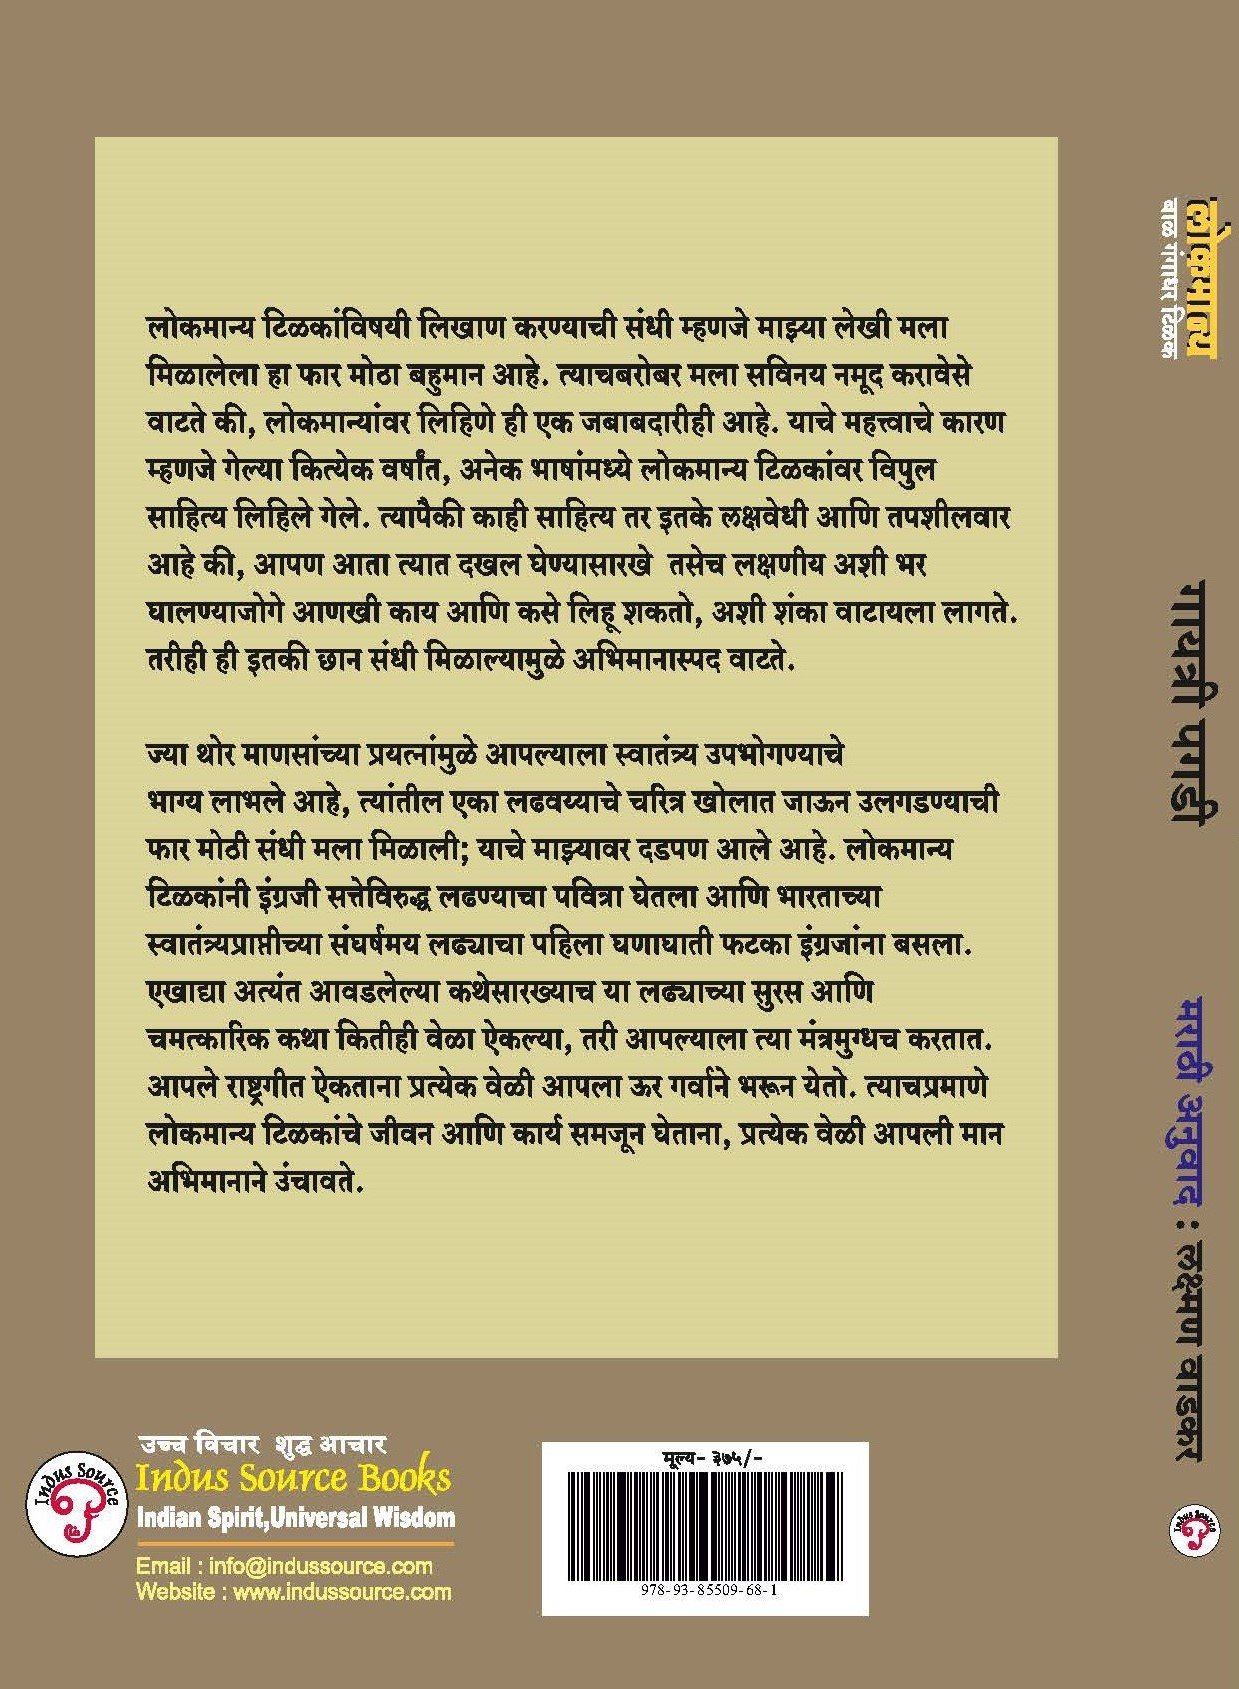 books written by bal gangadhar tilak